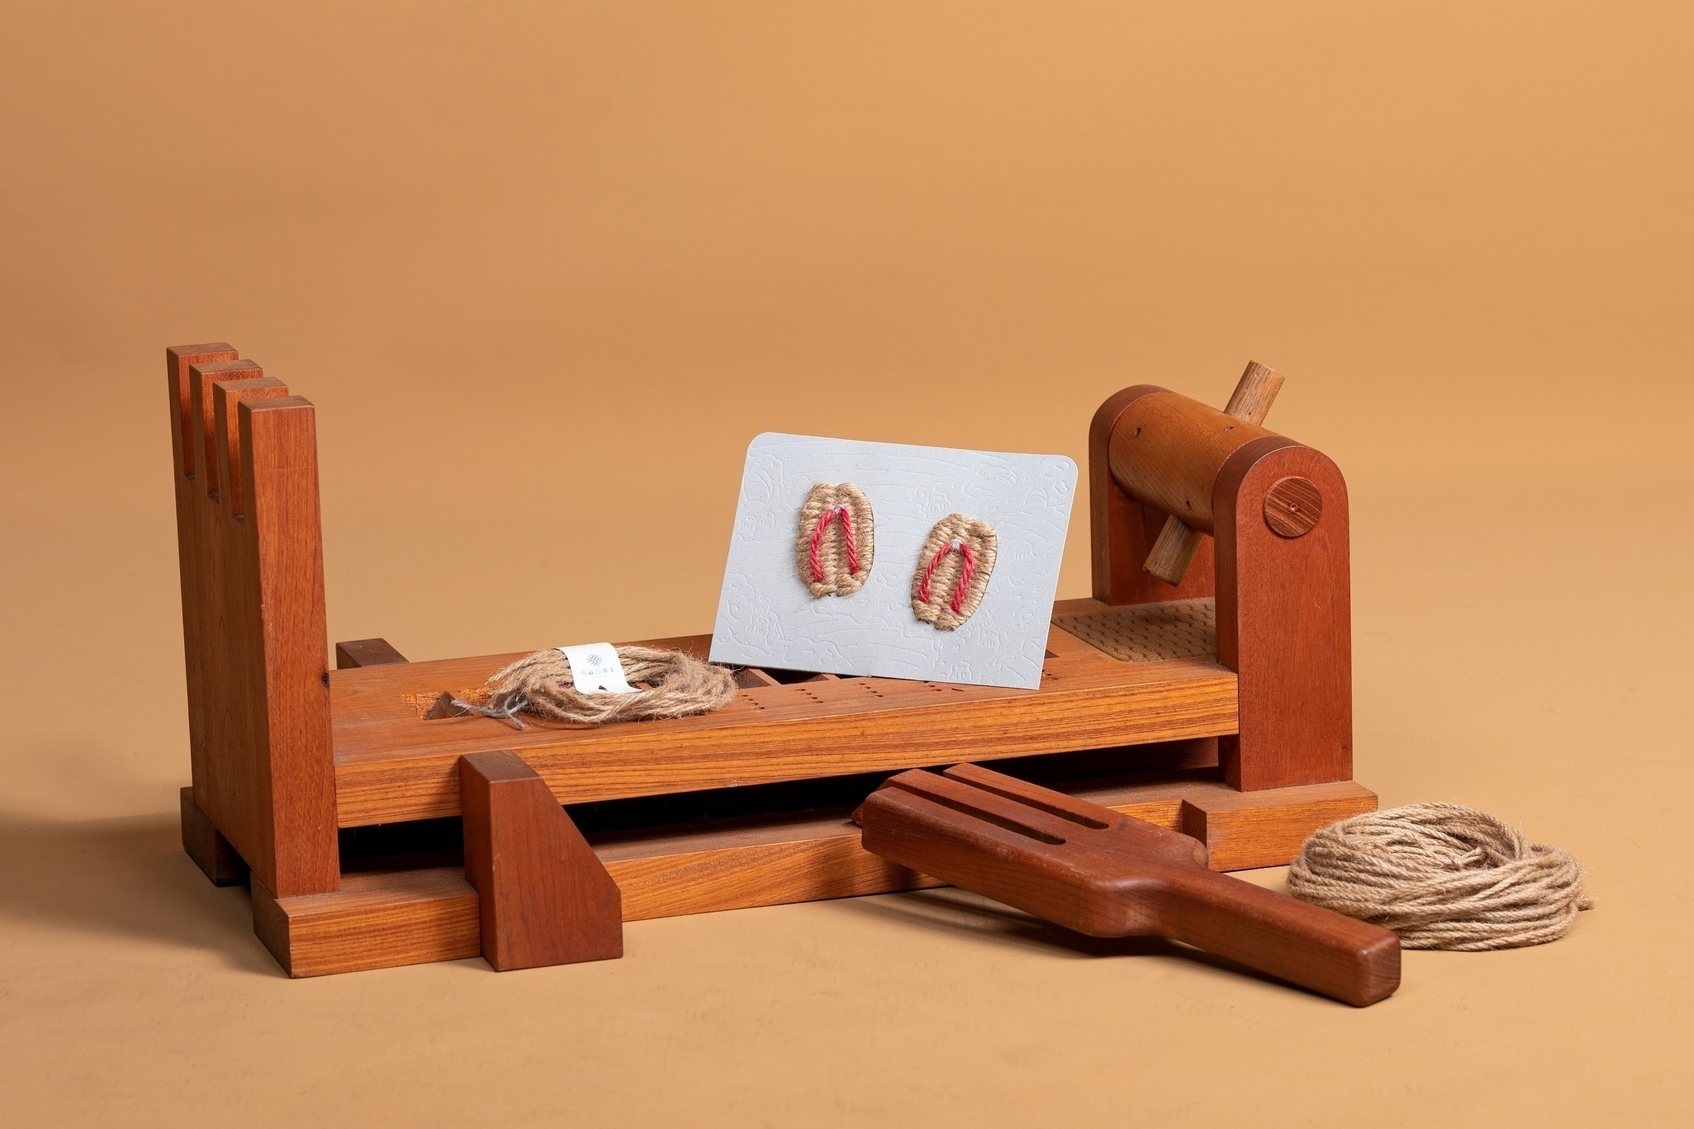 Straw sandal craftsmanship from Penghu-5